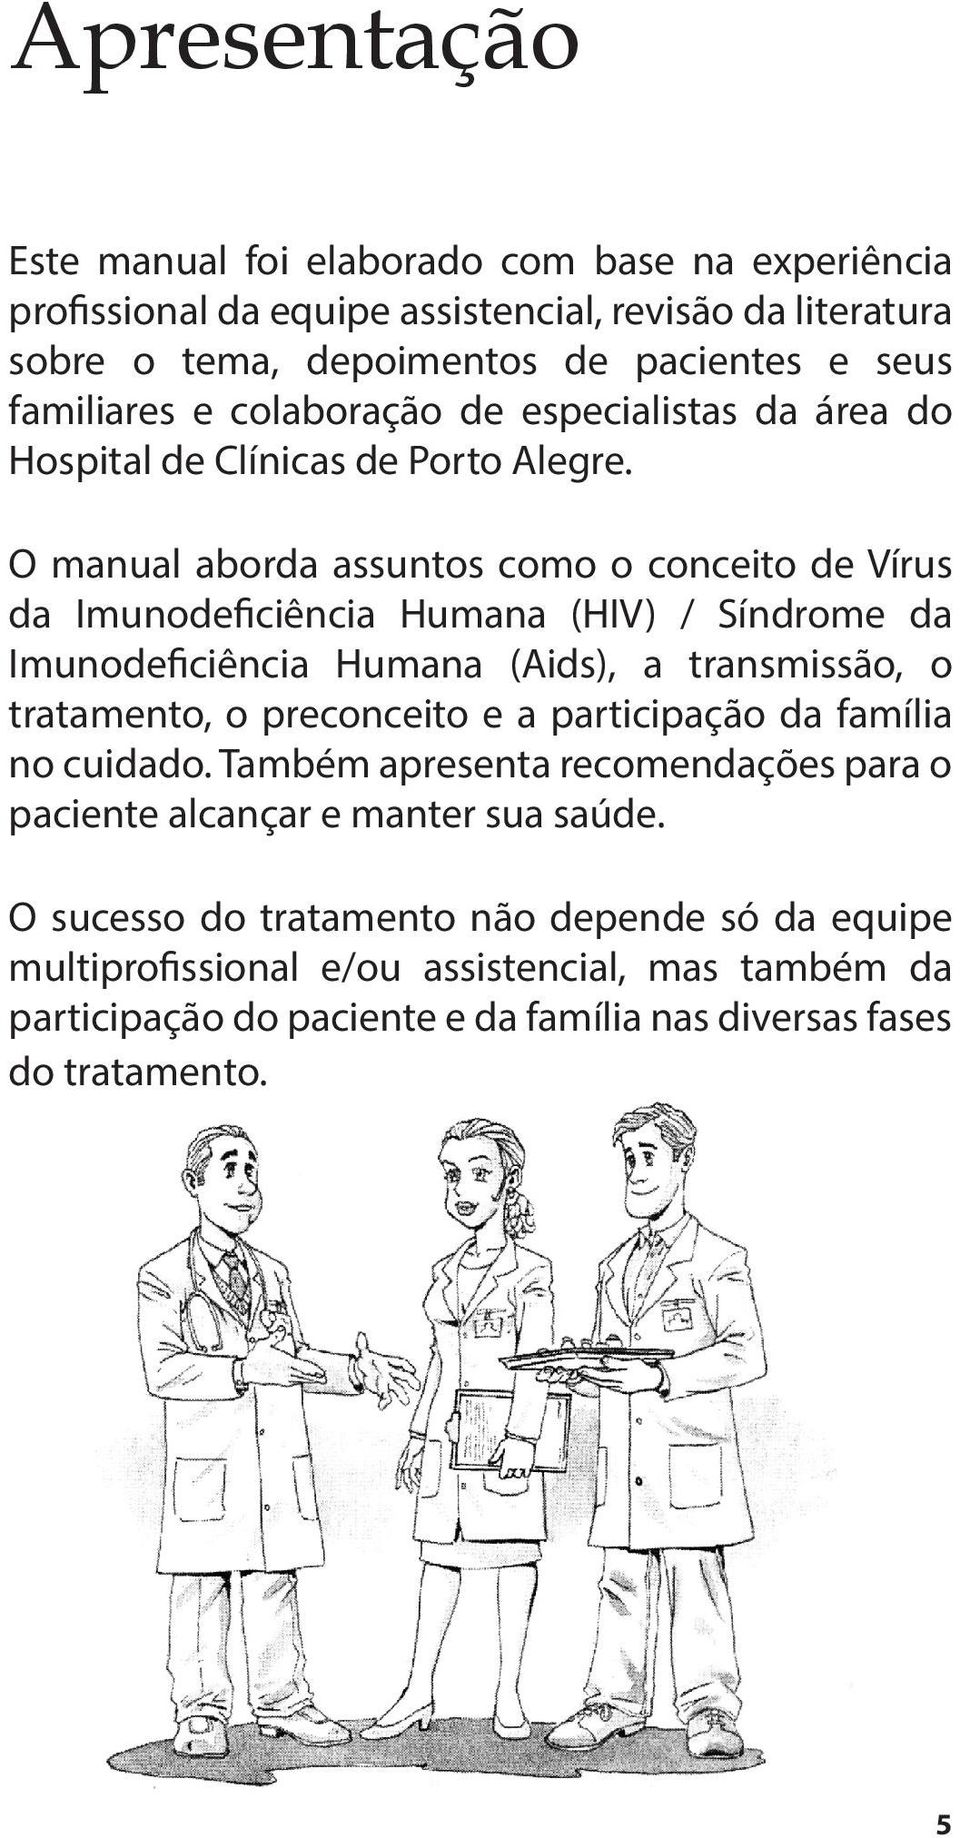 O manual aborda assuntos como o conceito de Vírus da Imunodeficiência Humana (HIV) / Síndrome da Imunodeficiência Humana (Aids), a transmissão, o tratamento, o preconceito e a